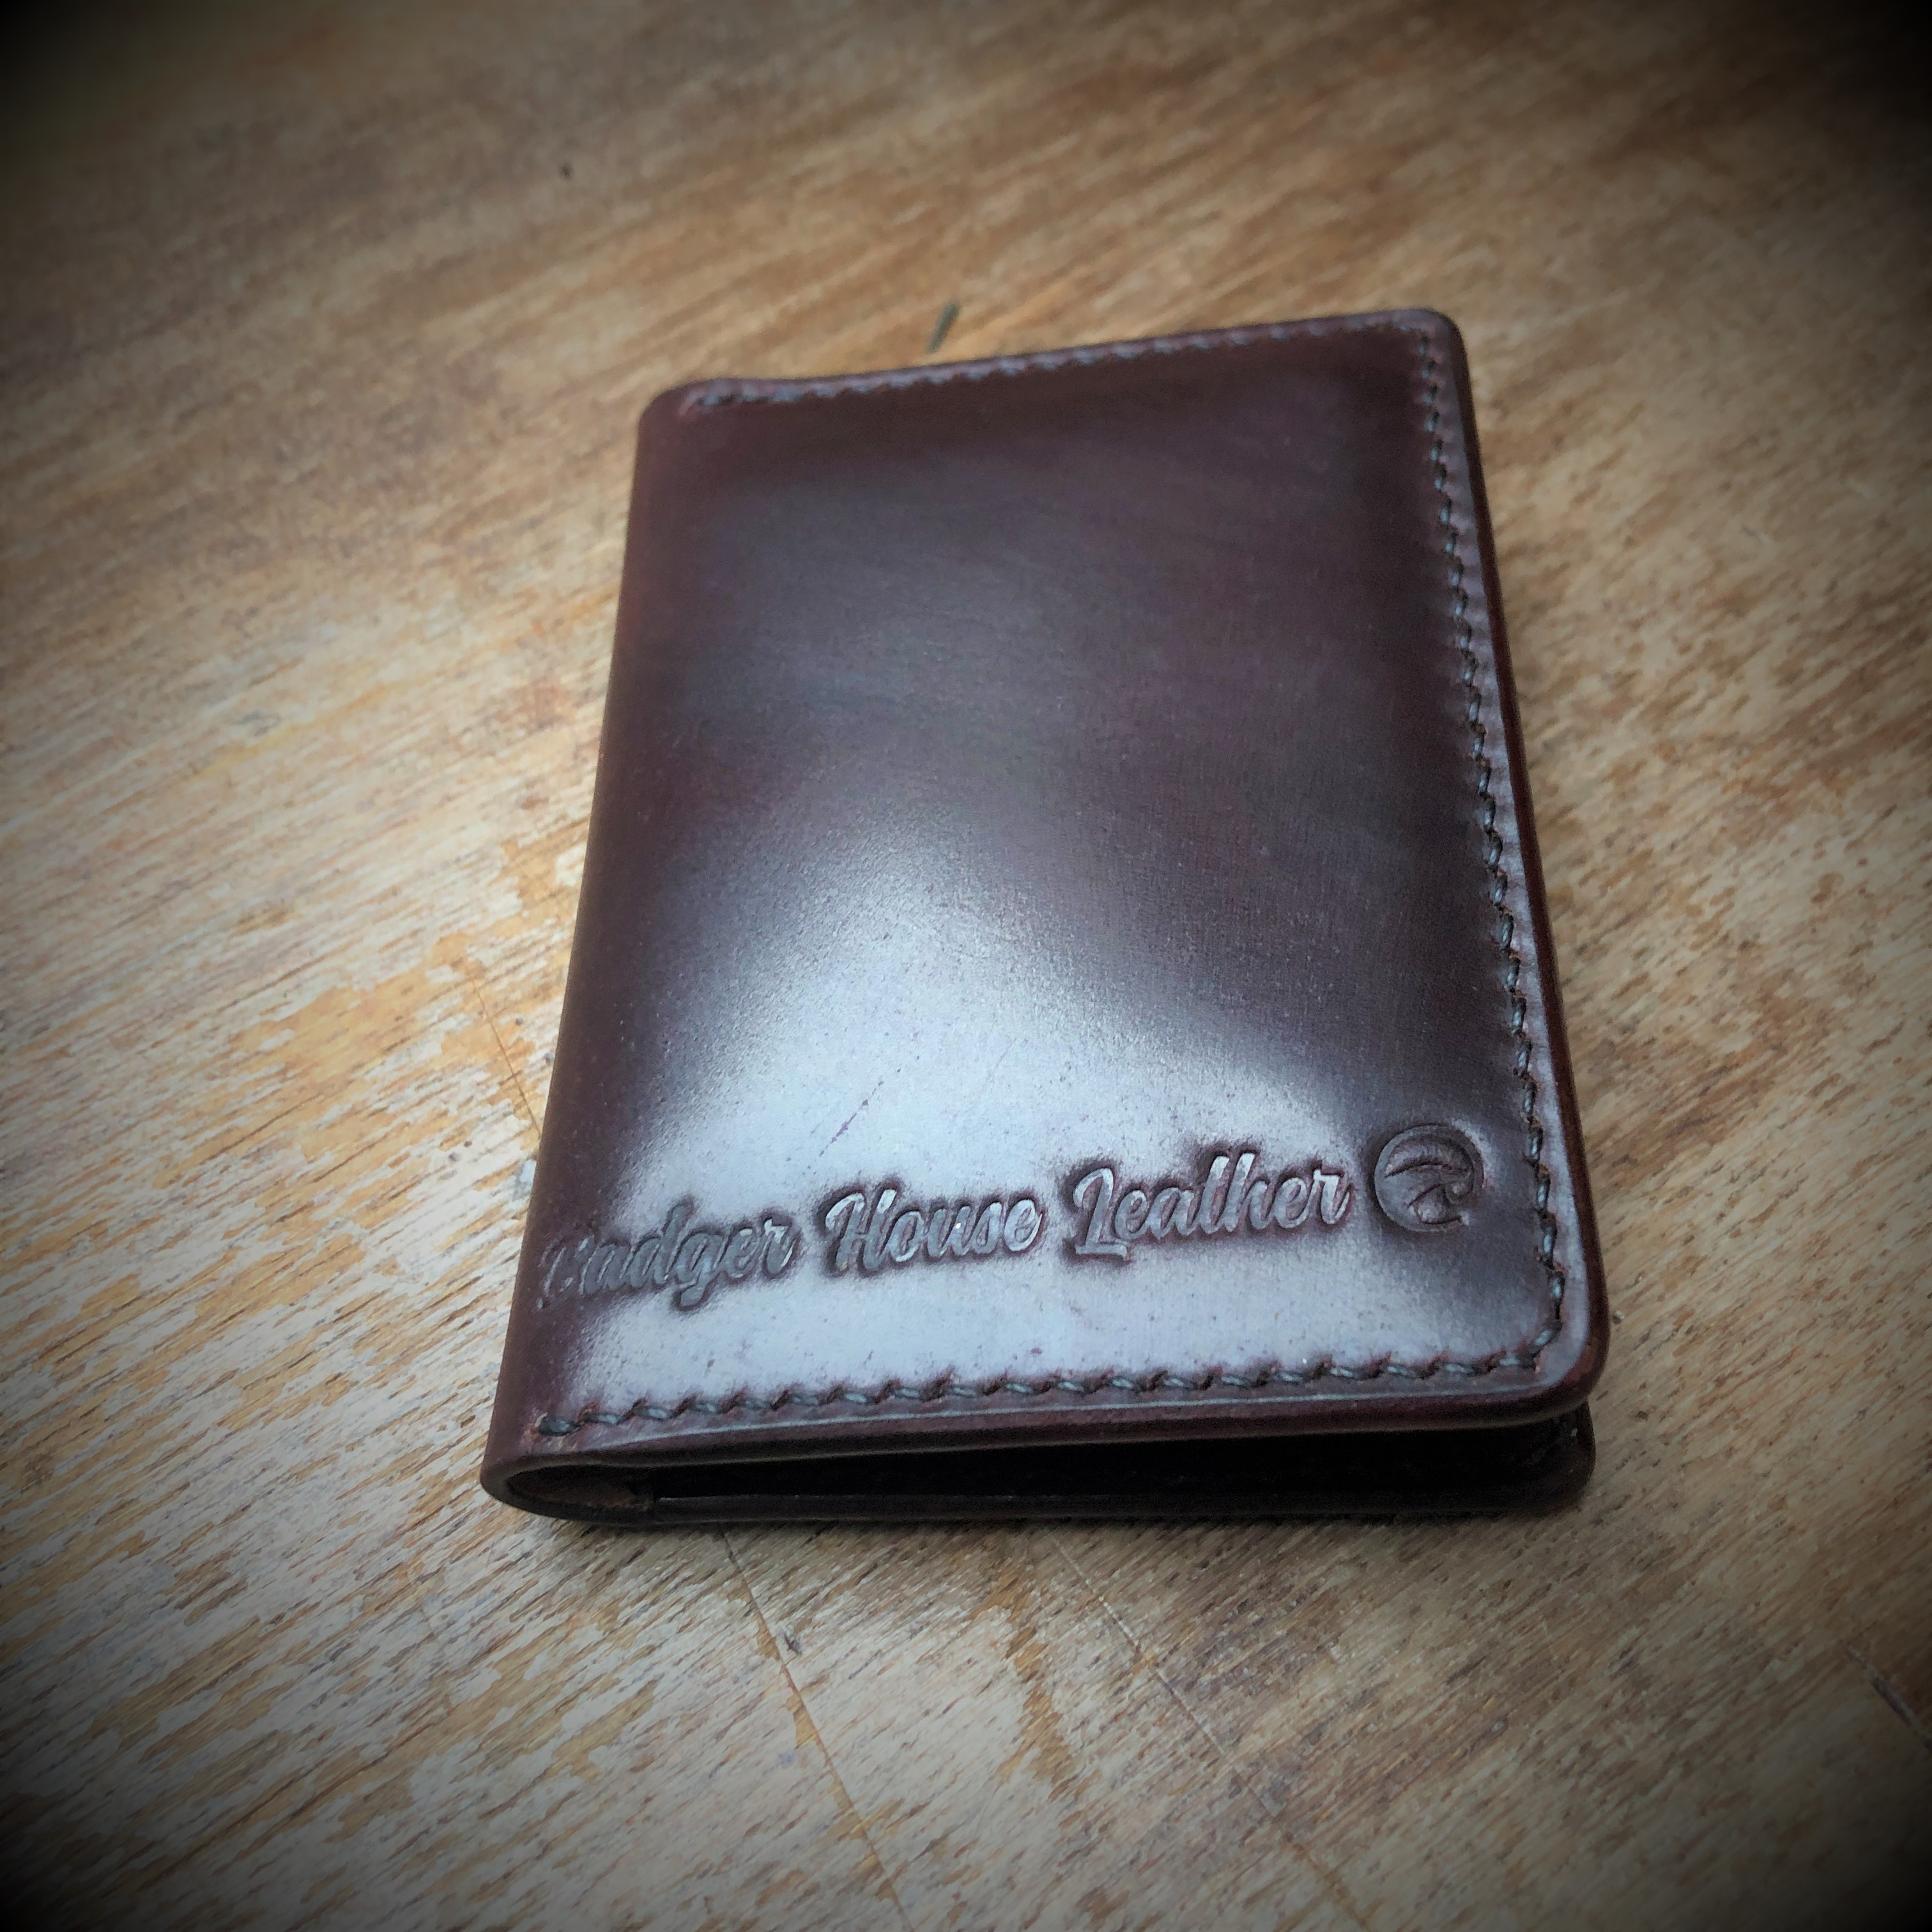 Shell cordovan bi-fold wallet